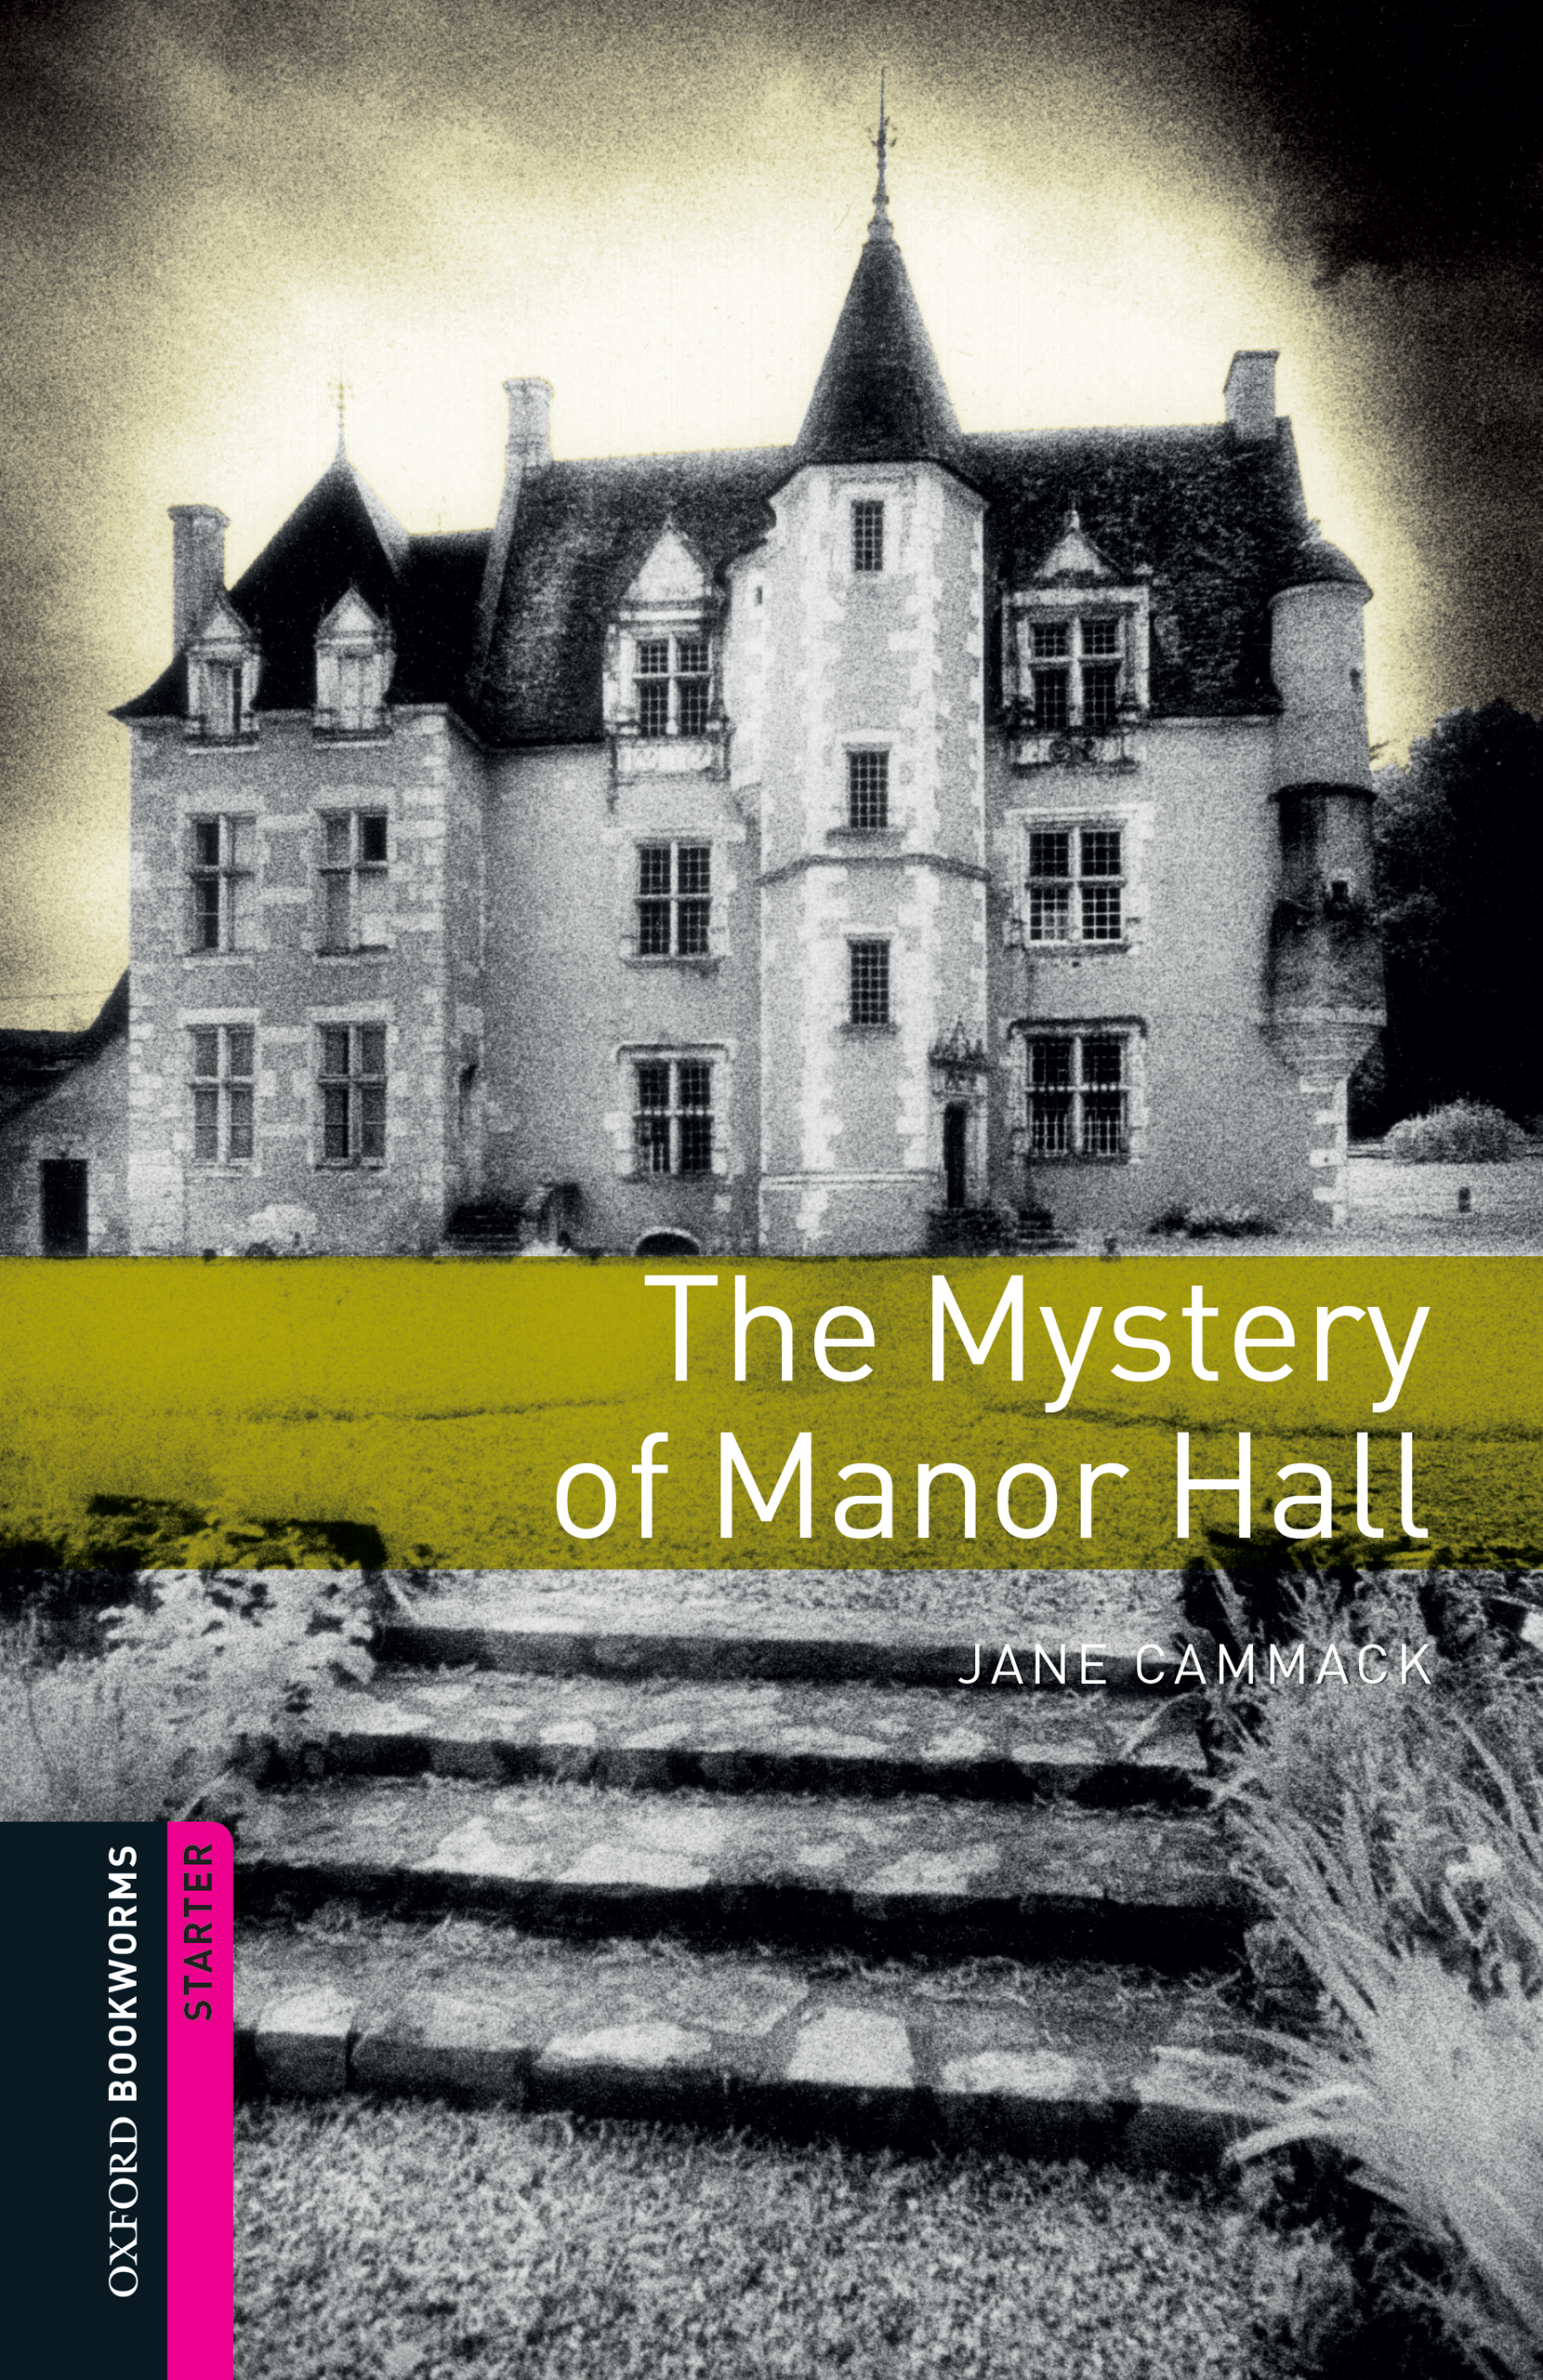 Книга The Mystery of Manor Hall из серии , созданная Jane Cammack, может относится к жанру Иностранные языки, Зарубежная образовательная литература, Иностранные языки. Стоимость электронной книги The Mystery of Manor Hall с идентификатором 23573853 составляет 405.87 руб.